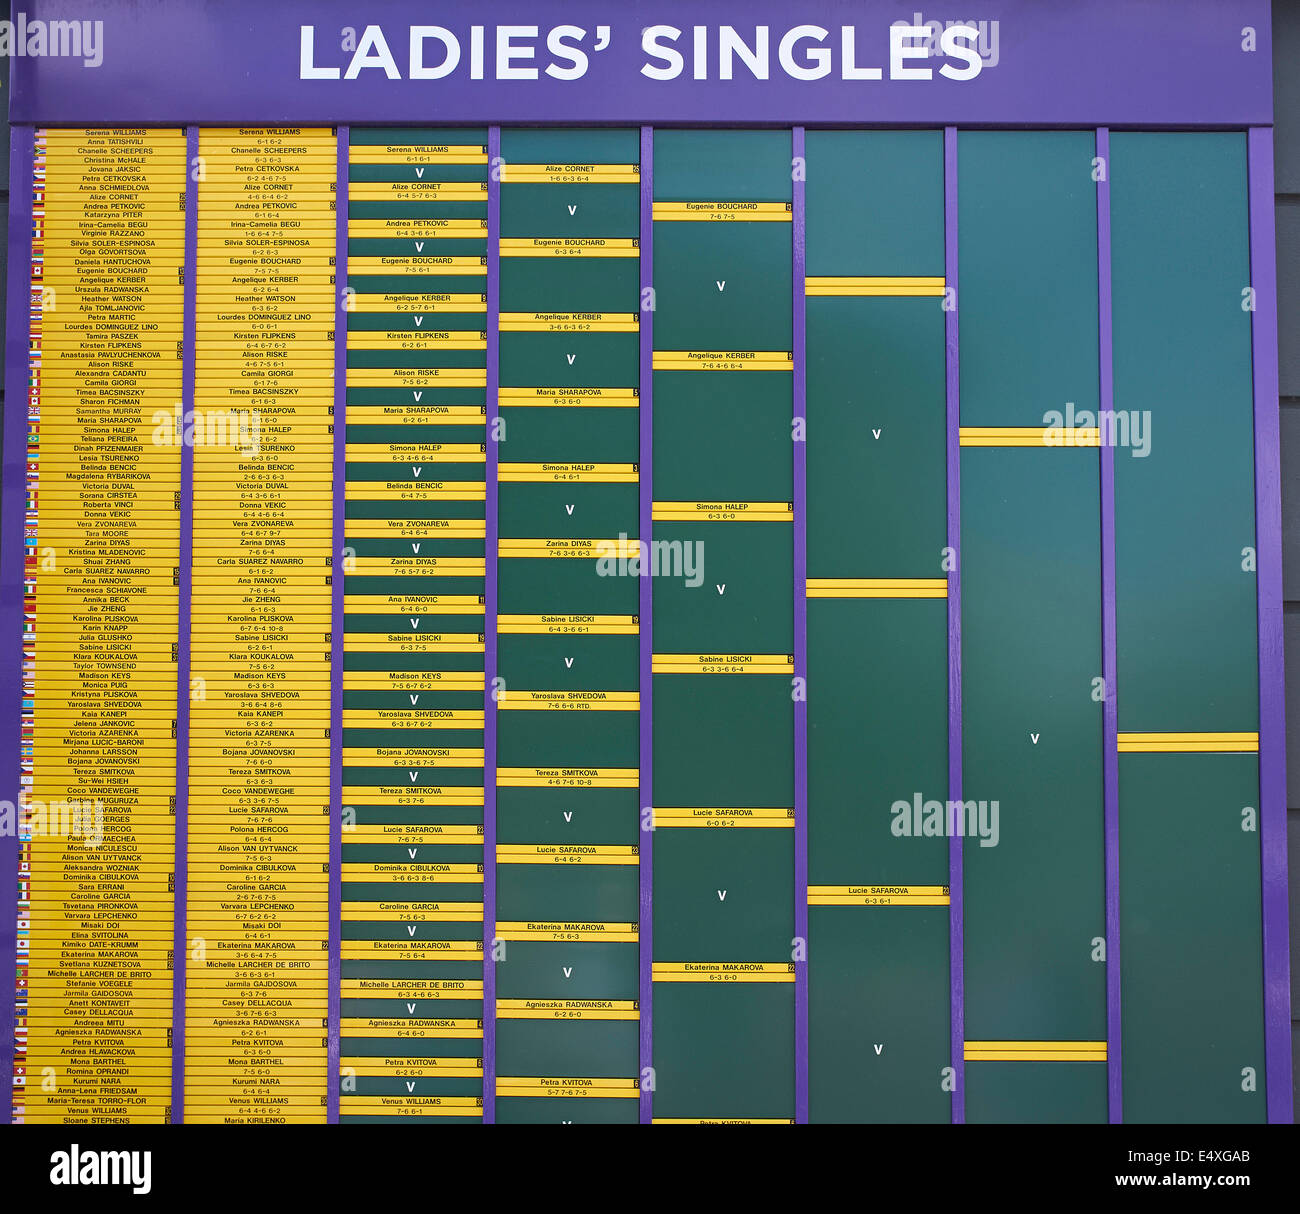 Championnat de Tennis de Wimbledon 2014, Mesdames des célibataires board Banque D'Images